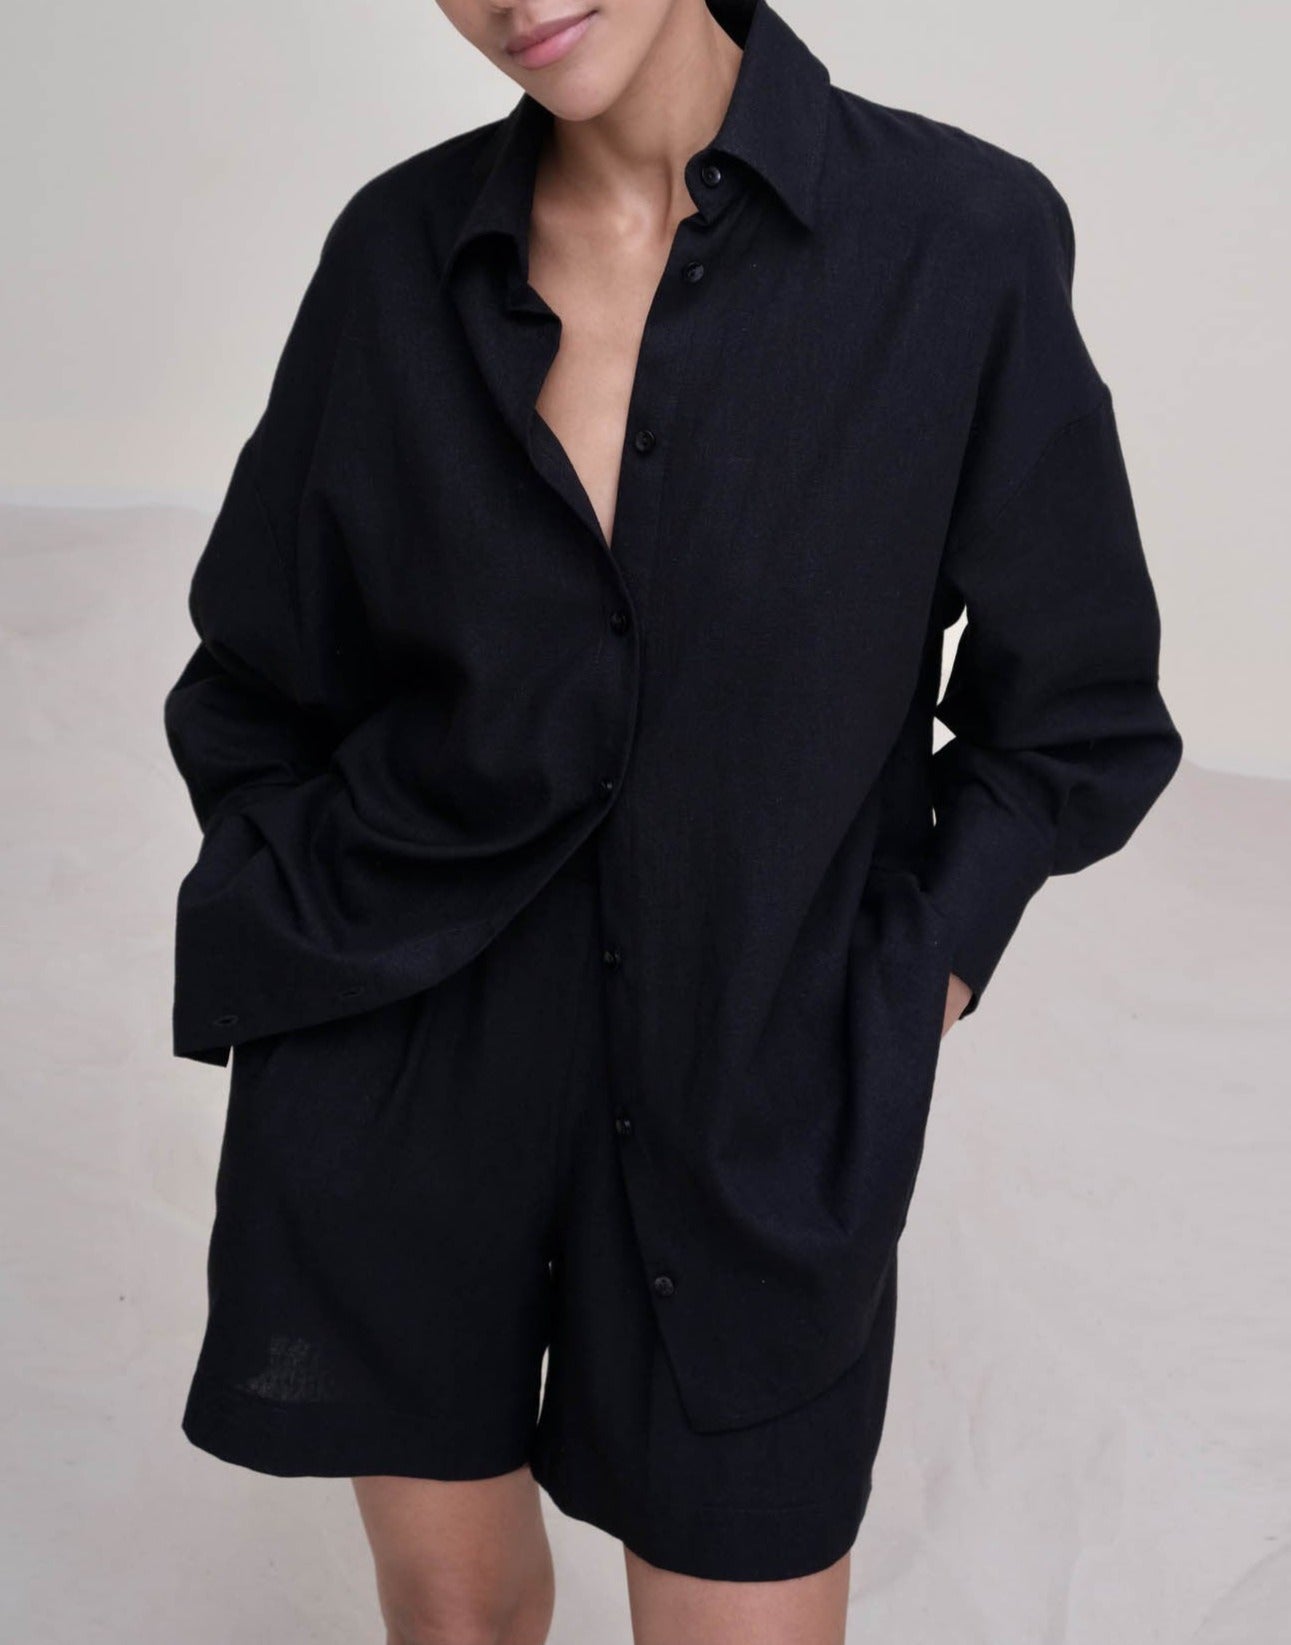 NTG Fad SUIT black top / S cotton linen vest shirt four piece set